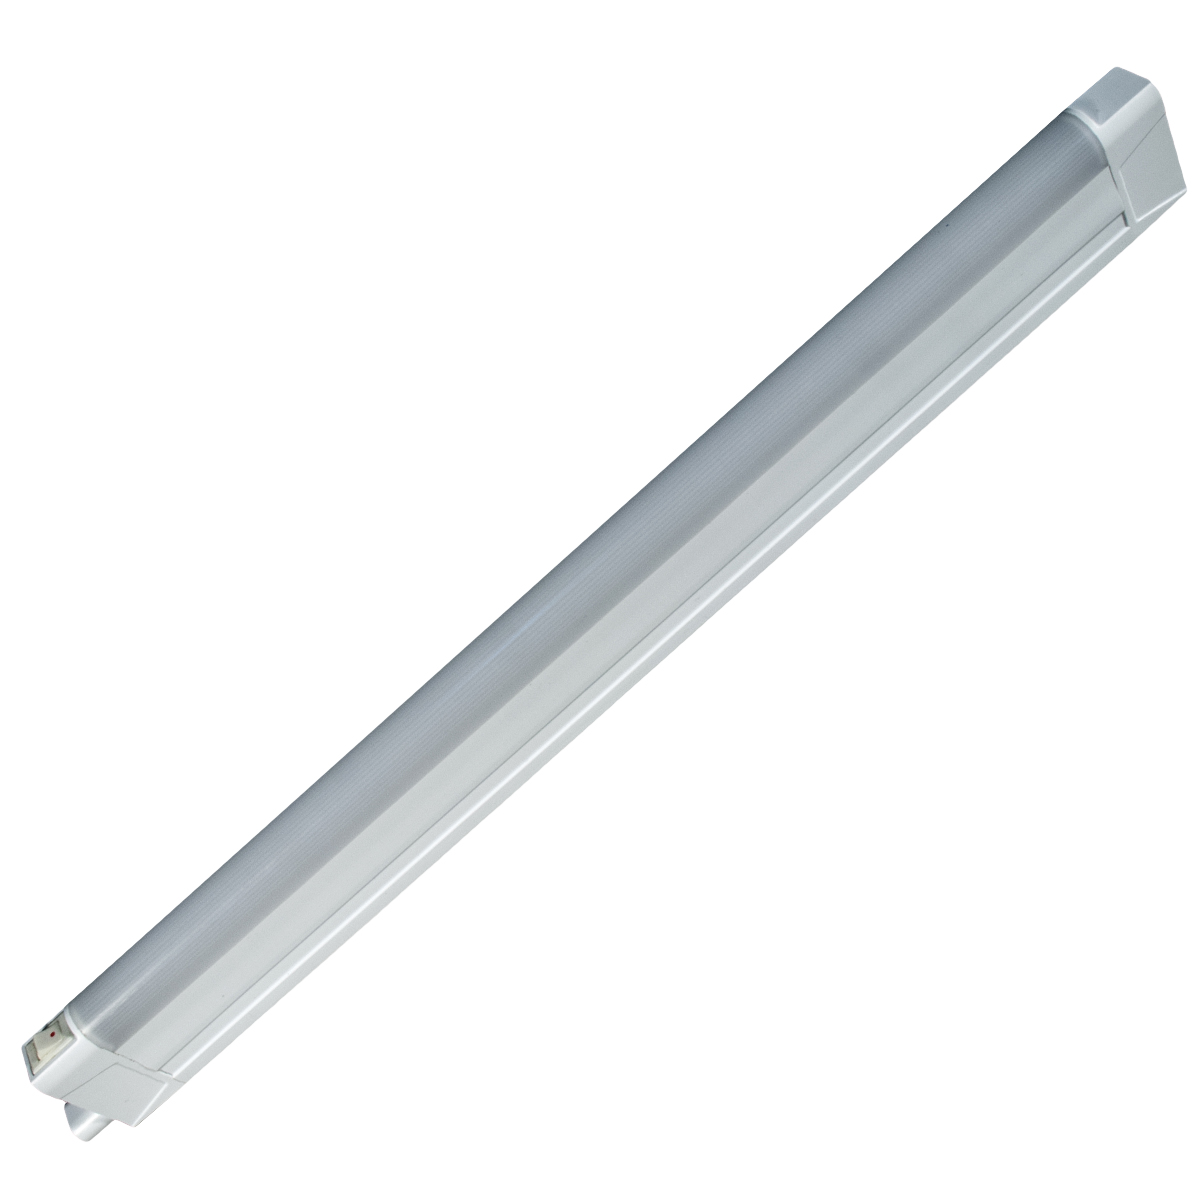 Линейный светодиодный светильник GLS LED Line 3, 4200К, 814 мм светильник светодиодный luazon ск 077 usb 2 5 вт 8 диодов 200 лм 3000 к теплый белый